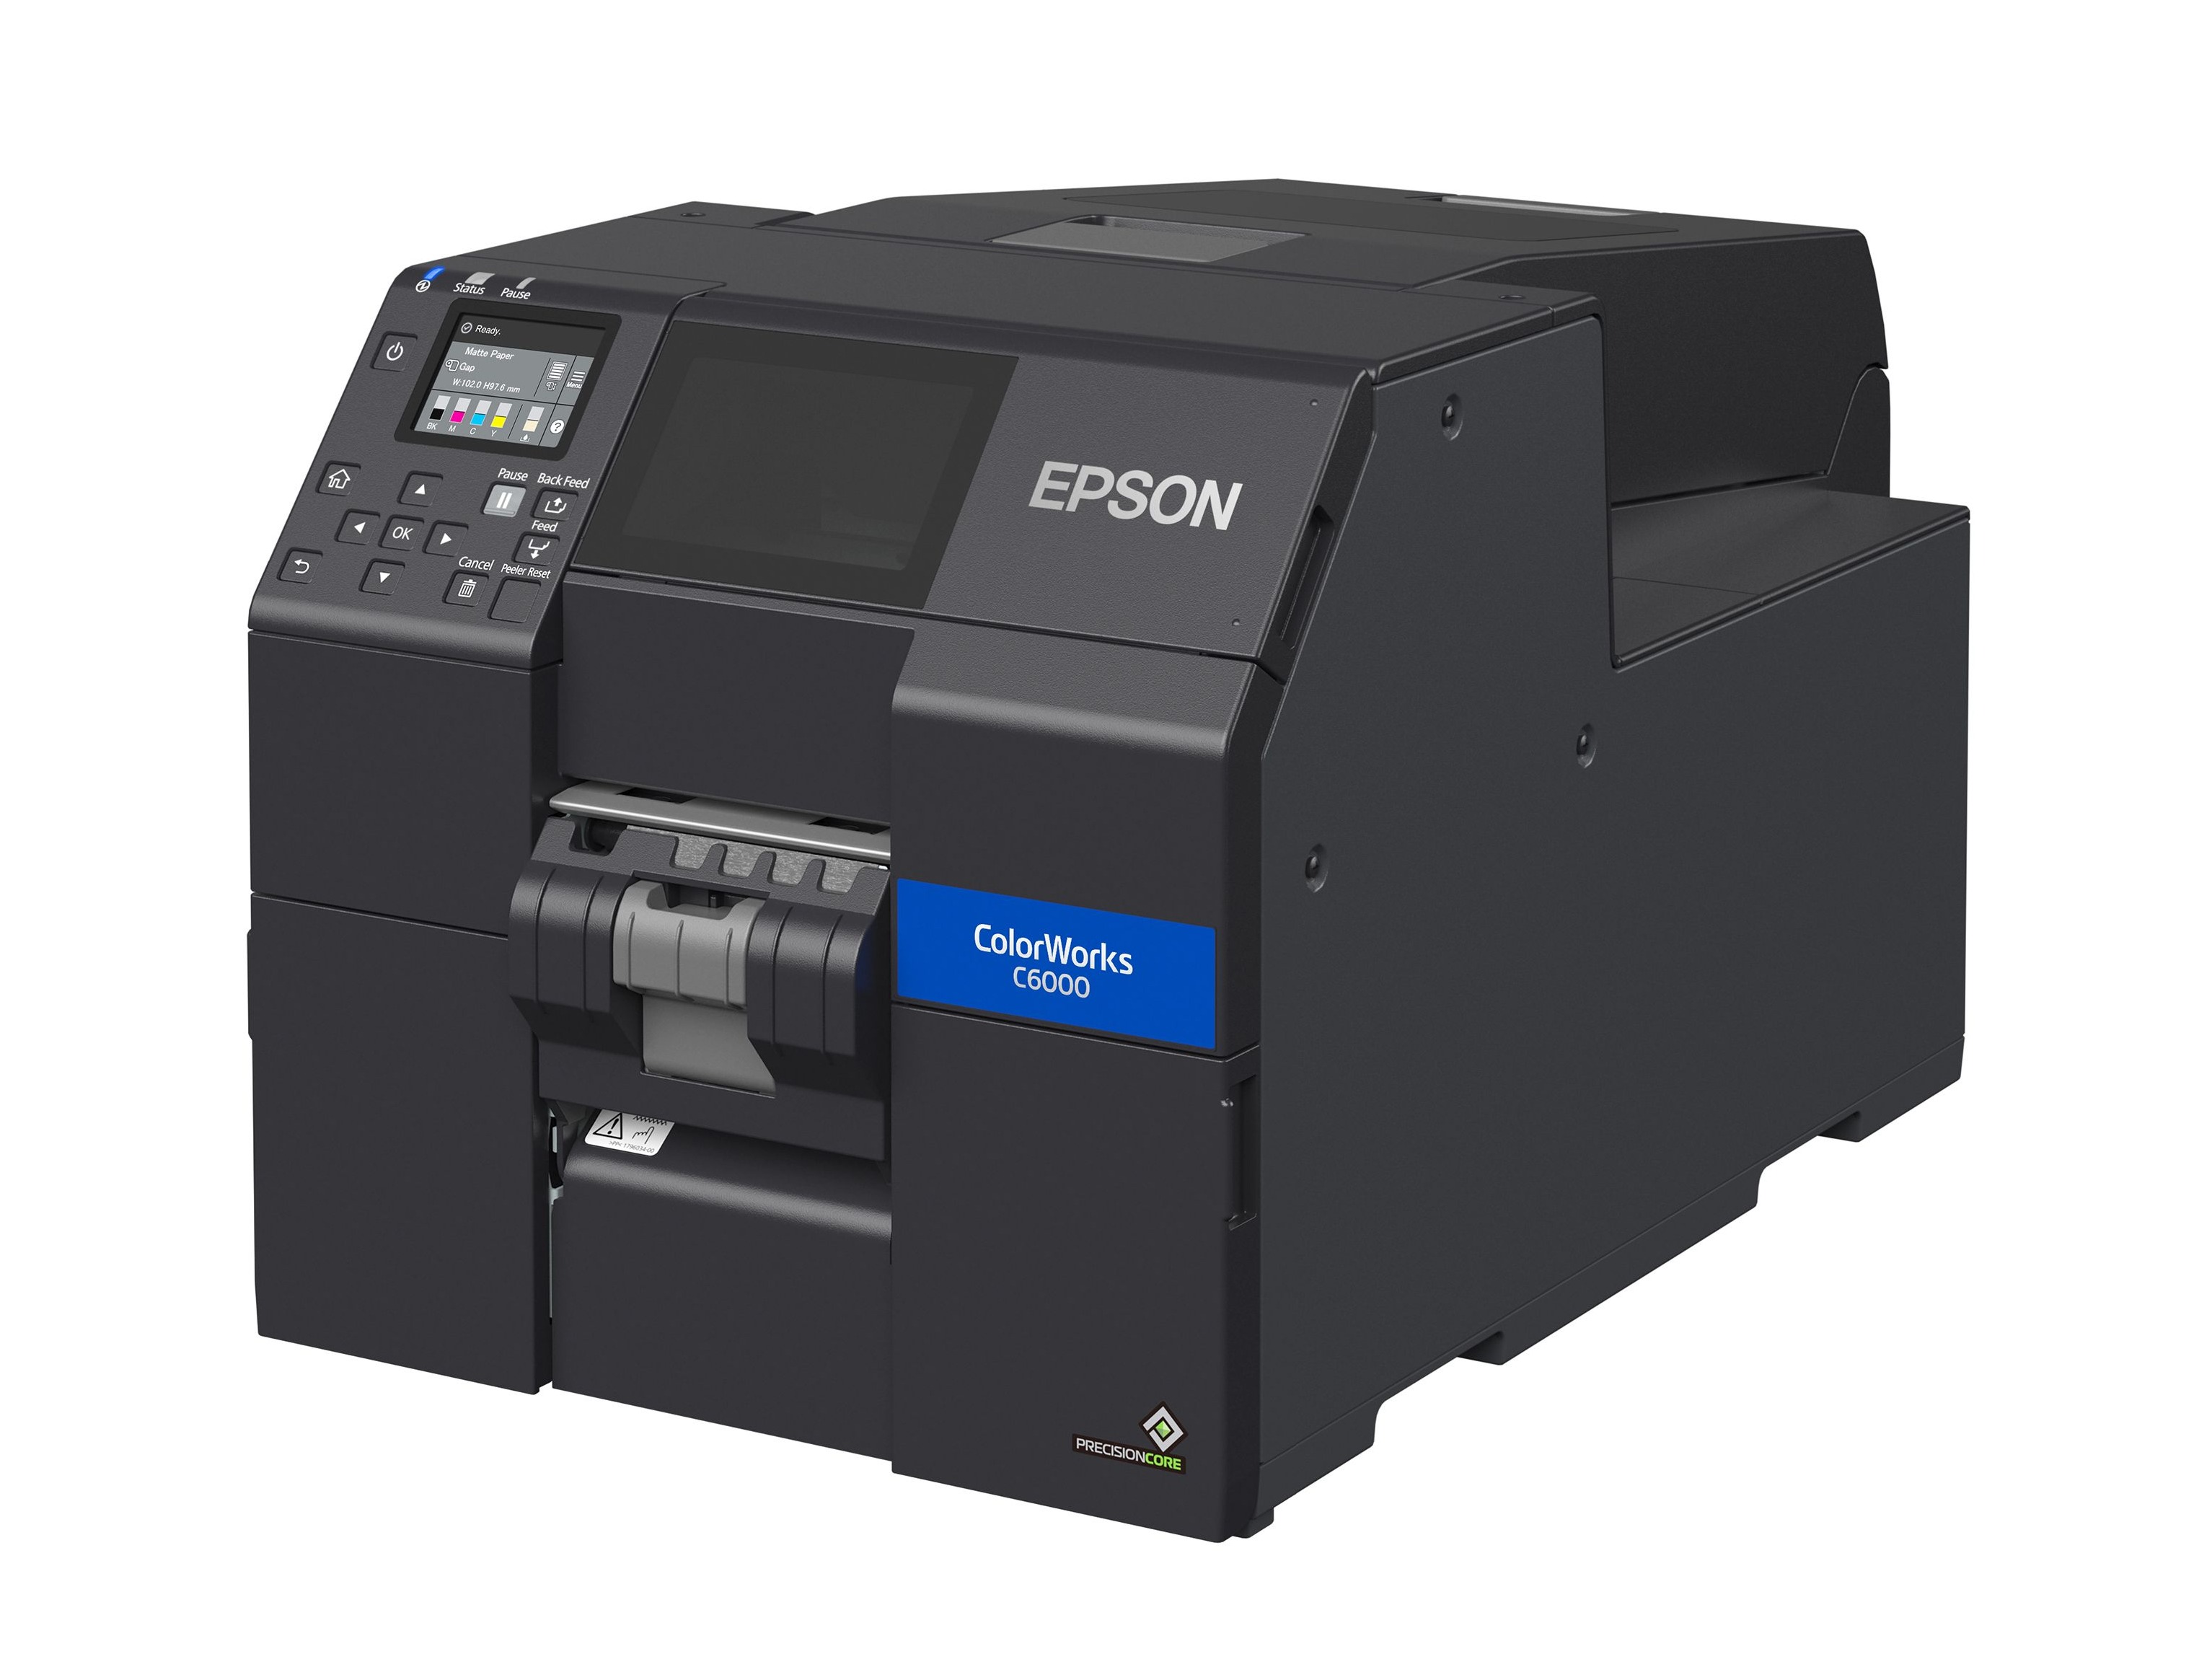 Epson ColorWorks C6000 Cannabis Color Label Printer